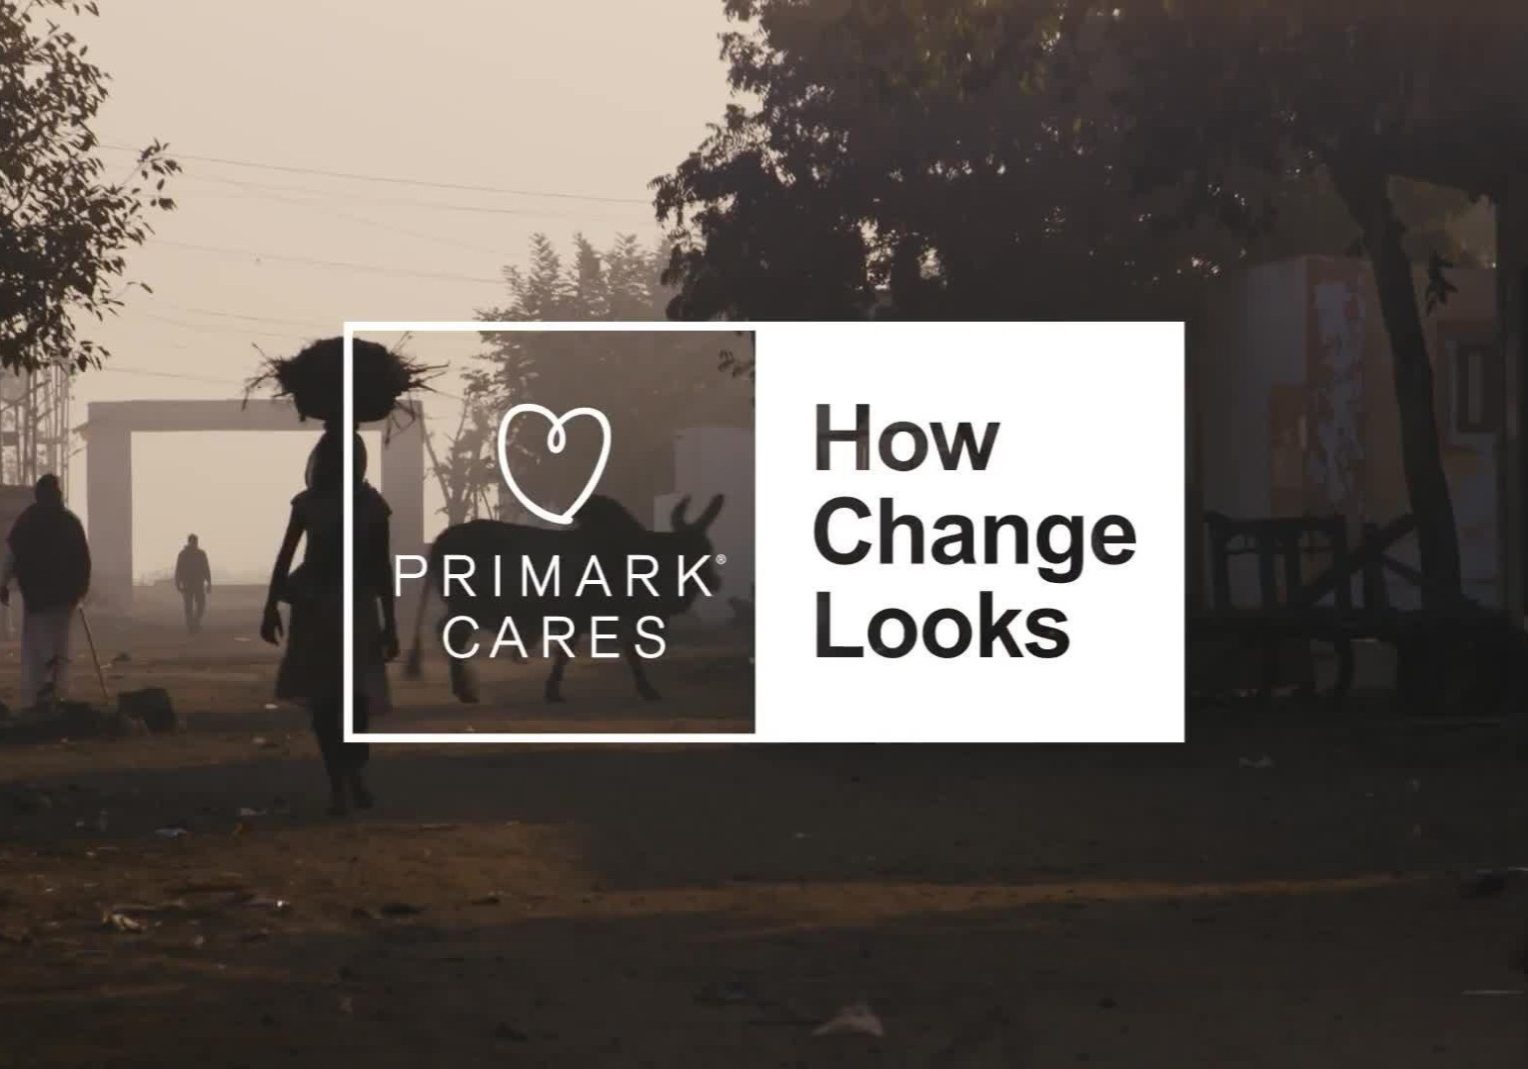 Primark cares